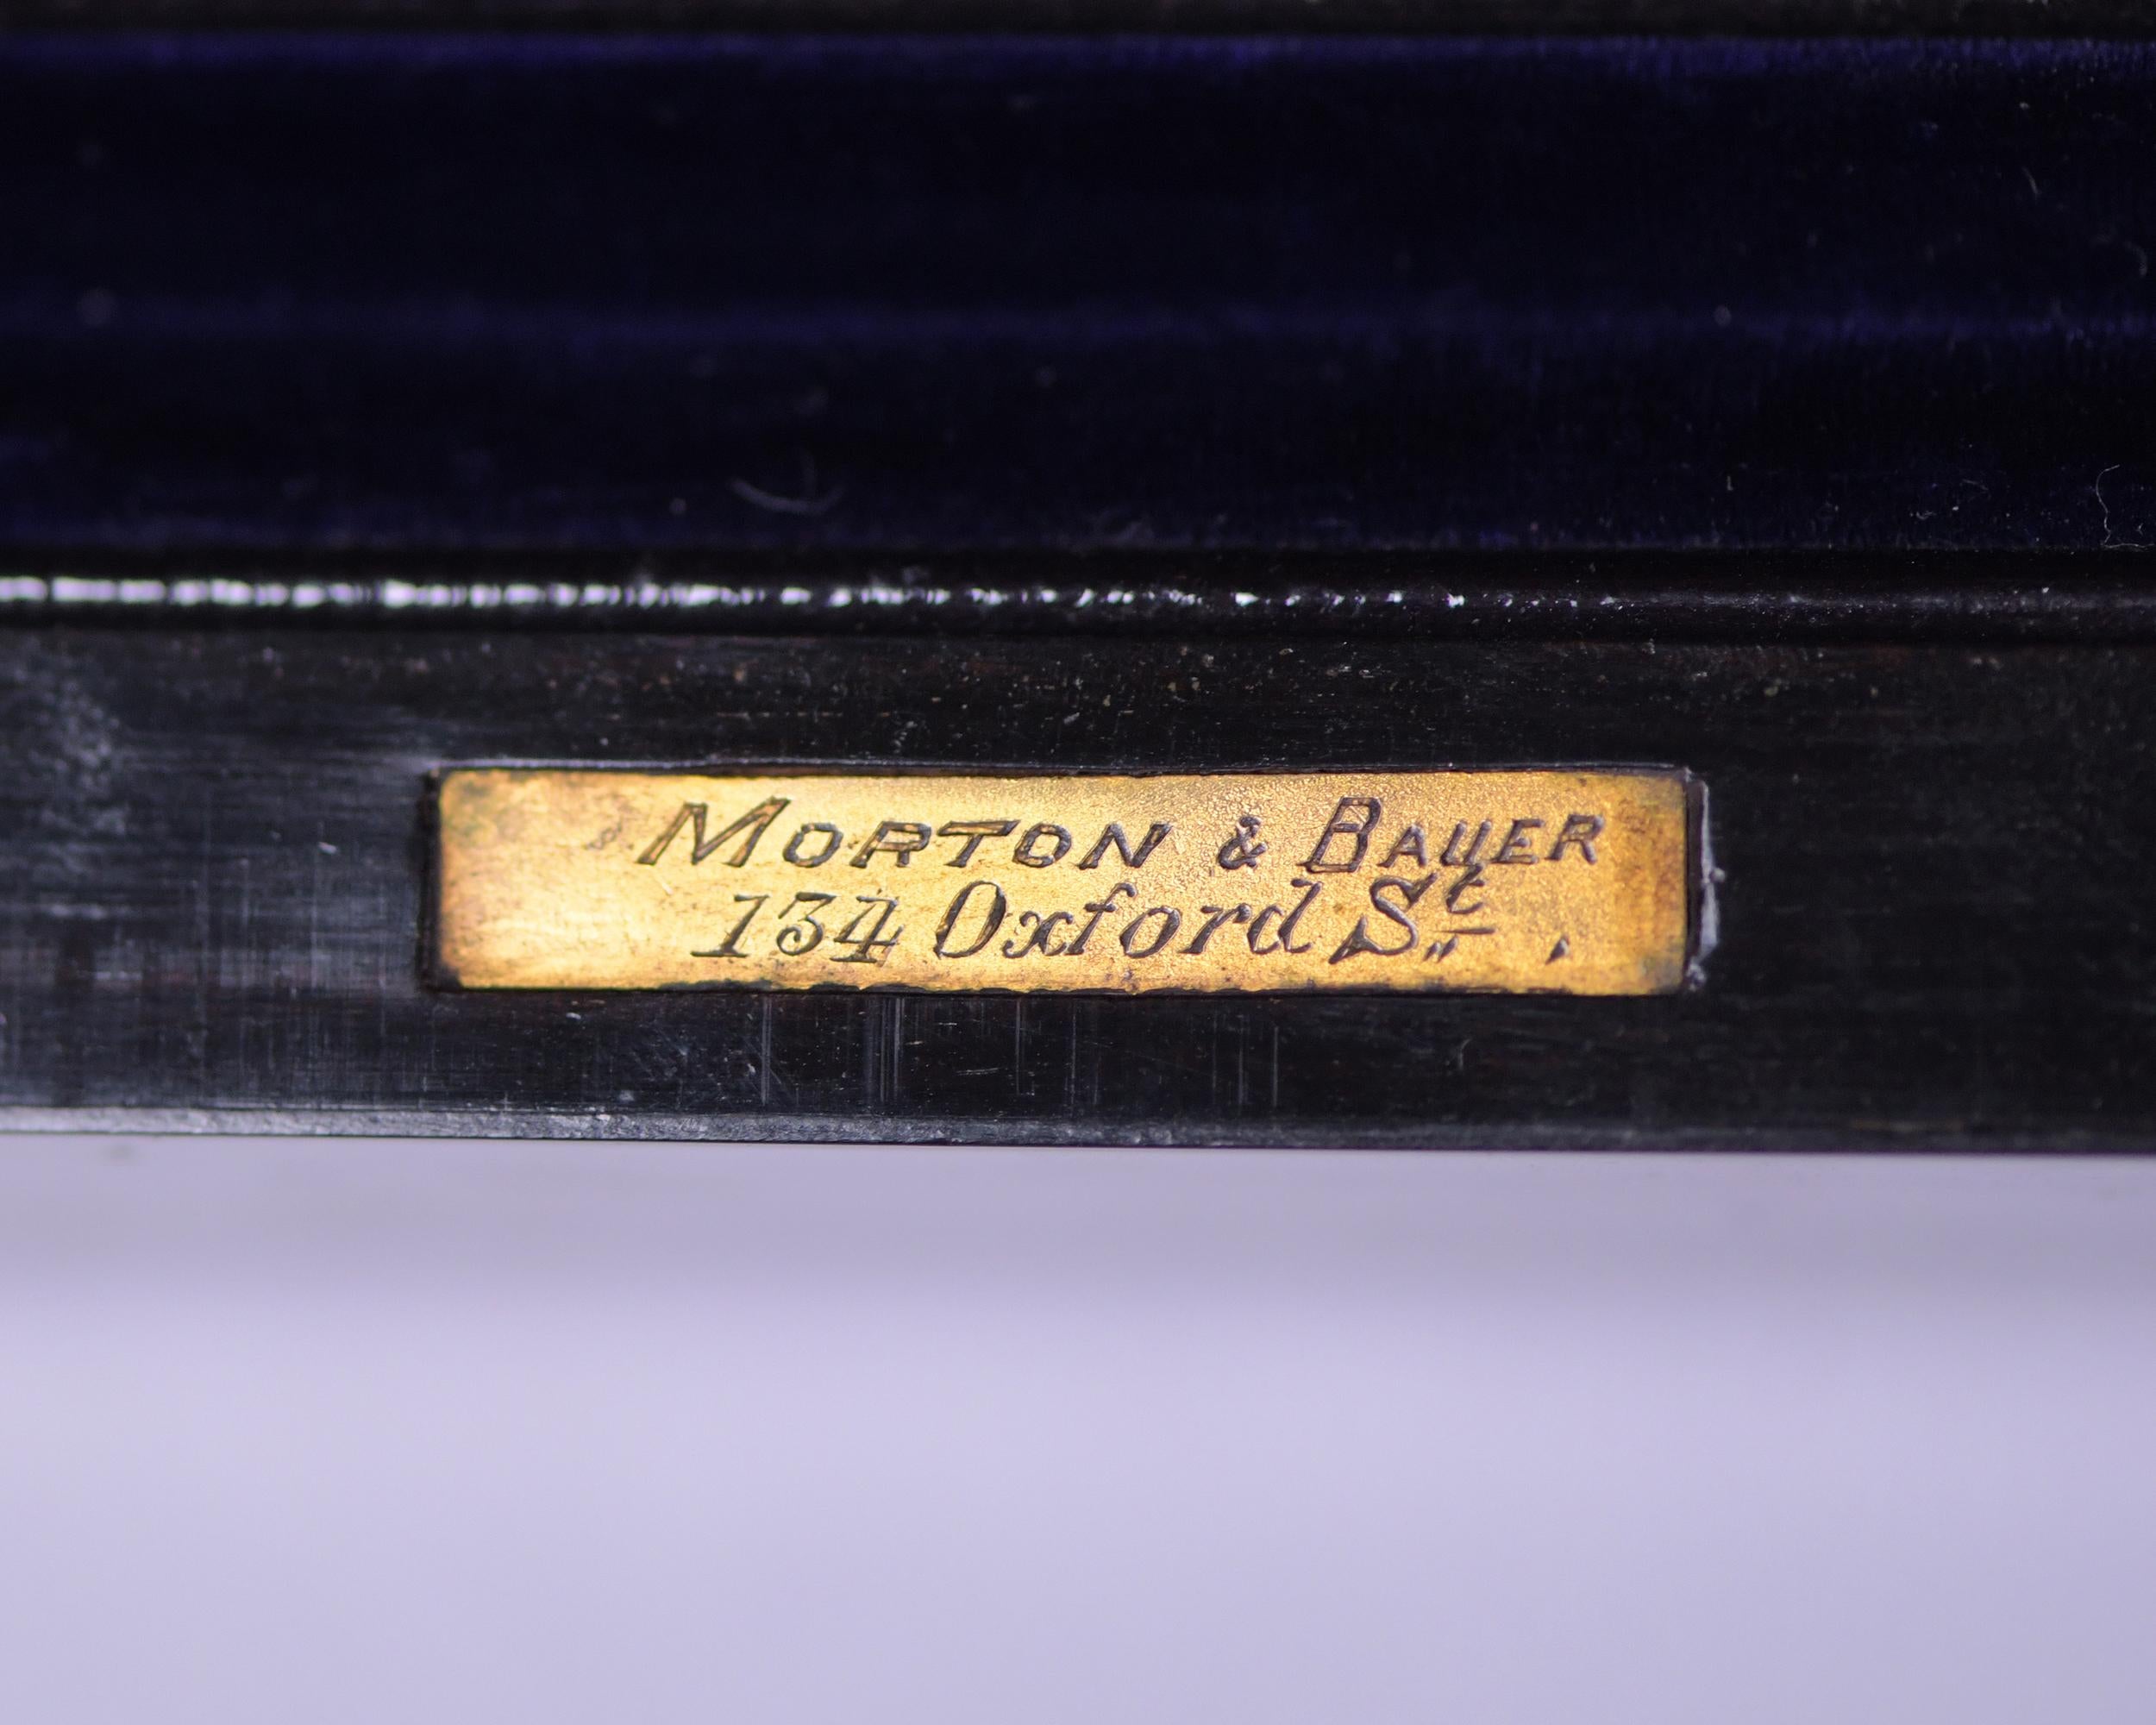 Coromandel Lady's Dressing Case by Morton & Bauer, Silver Lids Betjemanns & Sons 1